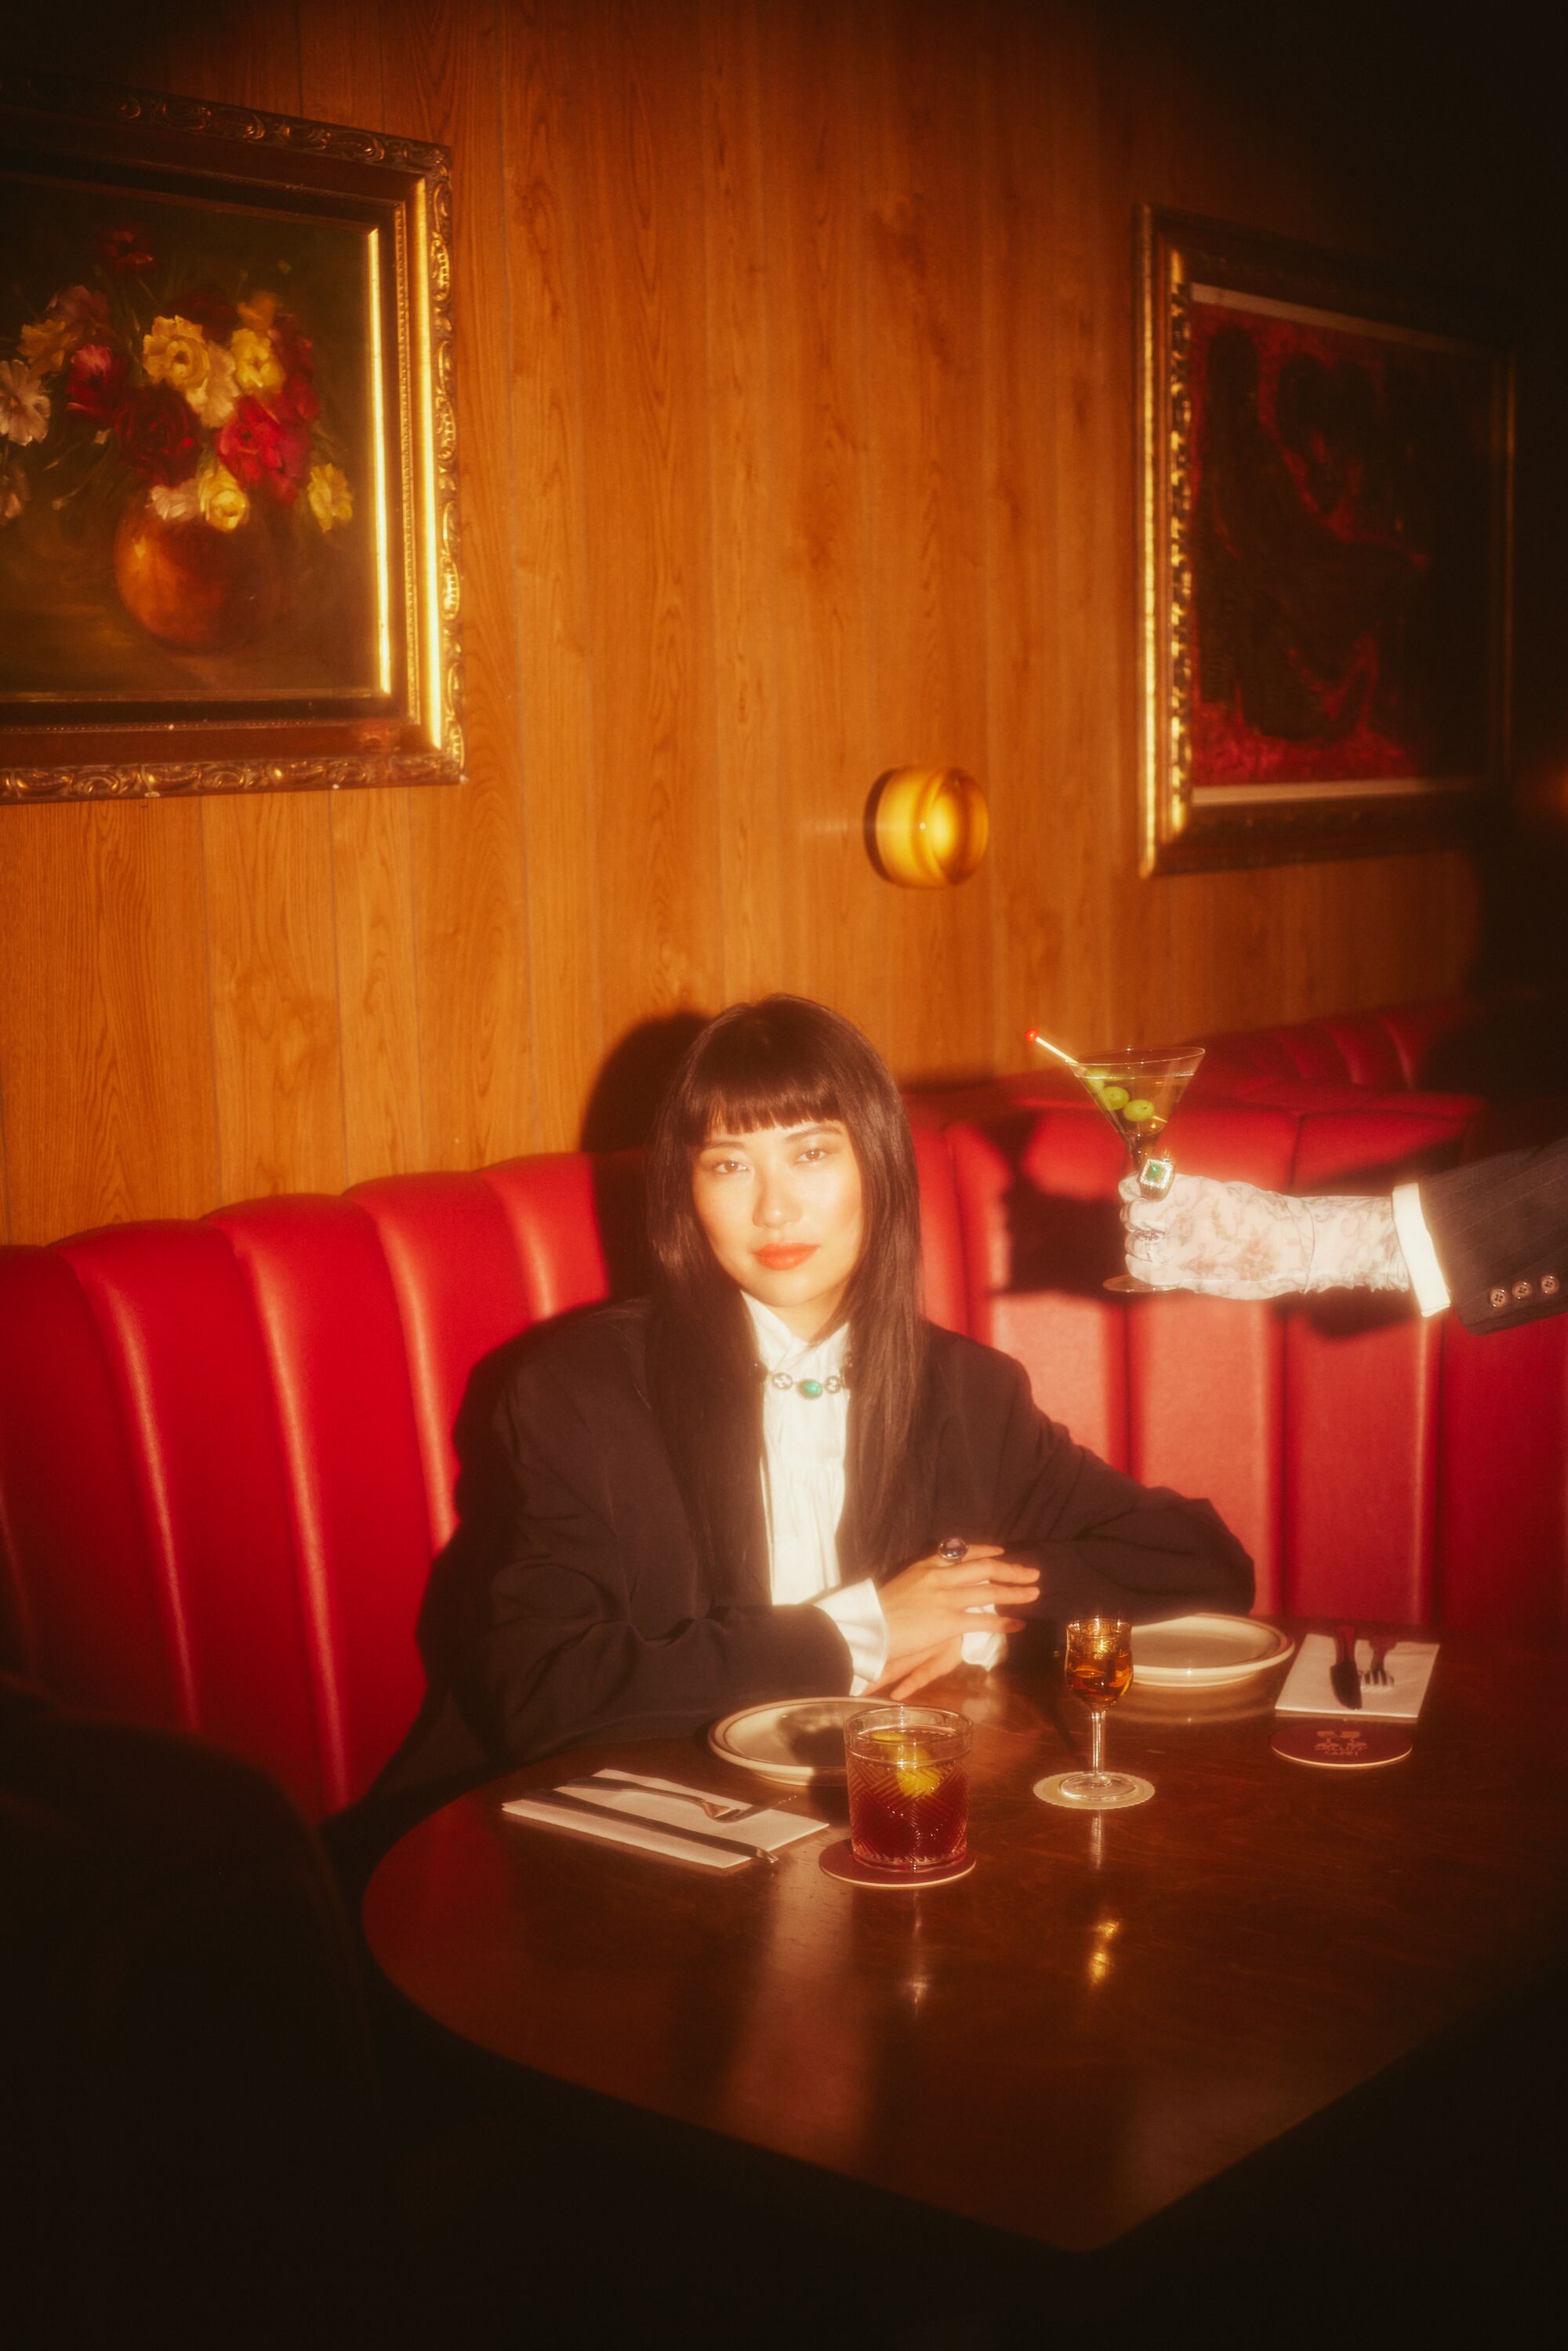 Une main gantée offre un martini à une femme assise dans une cabine rouge.